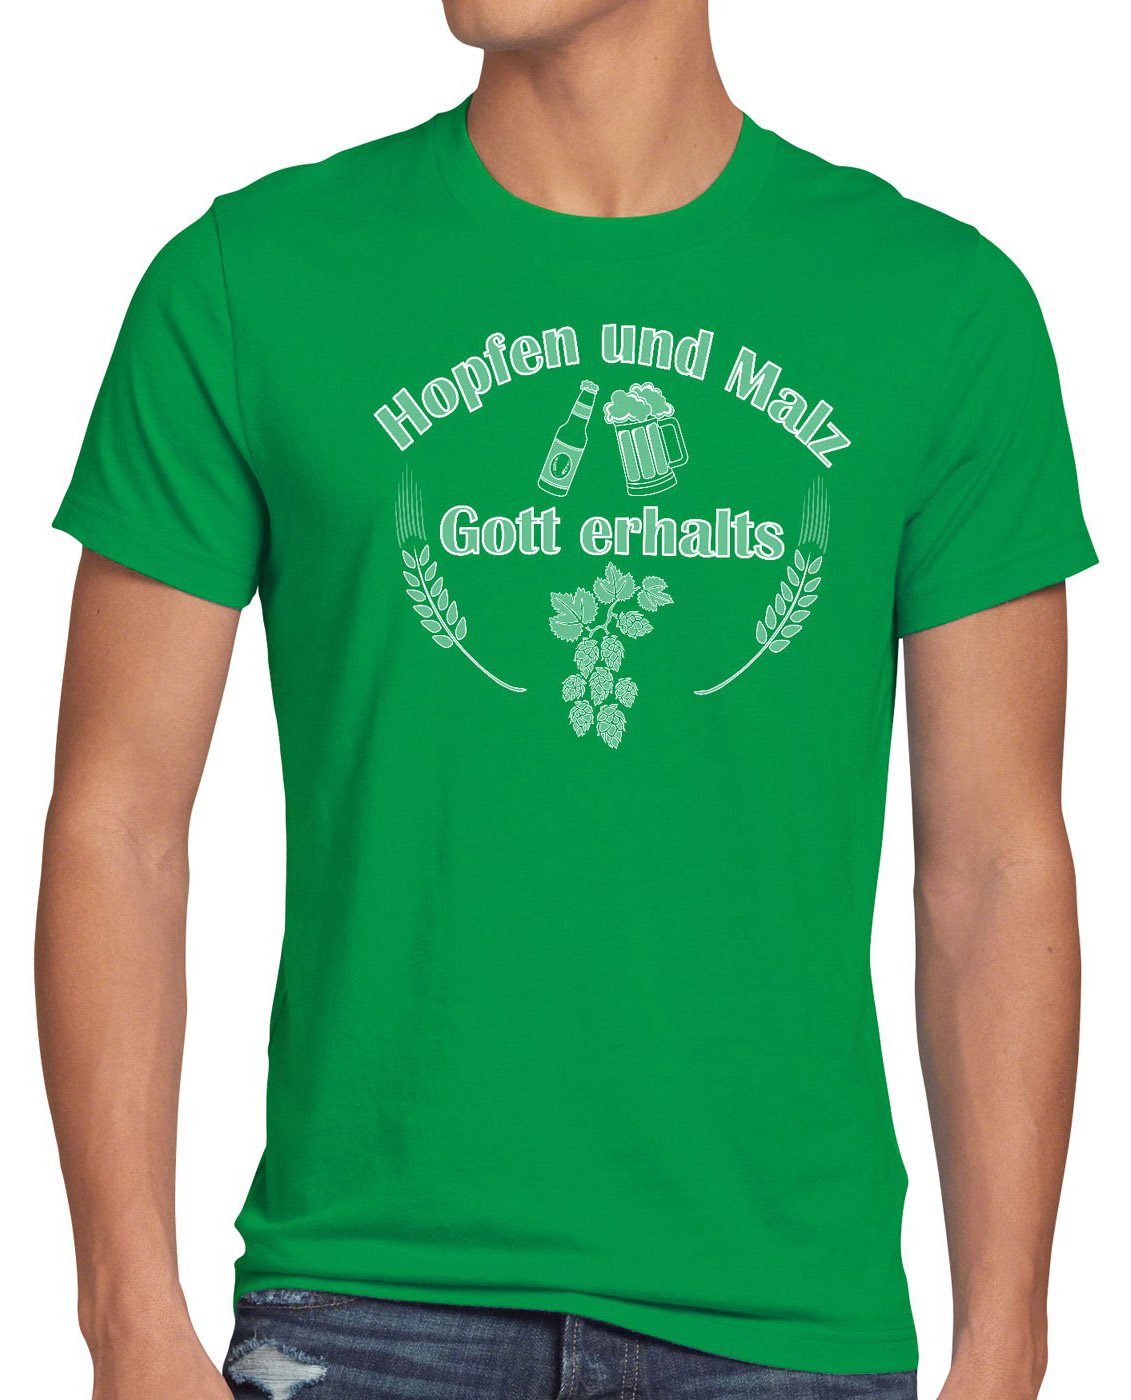 Fun und erhalts Spruch Malz Print-Shirt style3 Bier Herren Spruchshirt T-Shirt Hopfen Gott grün Funshirt